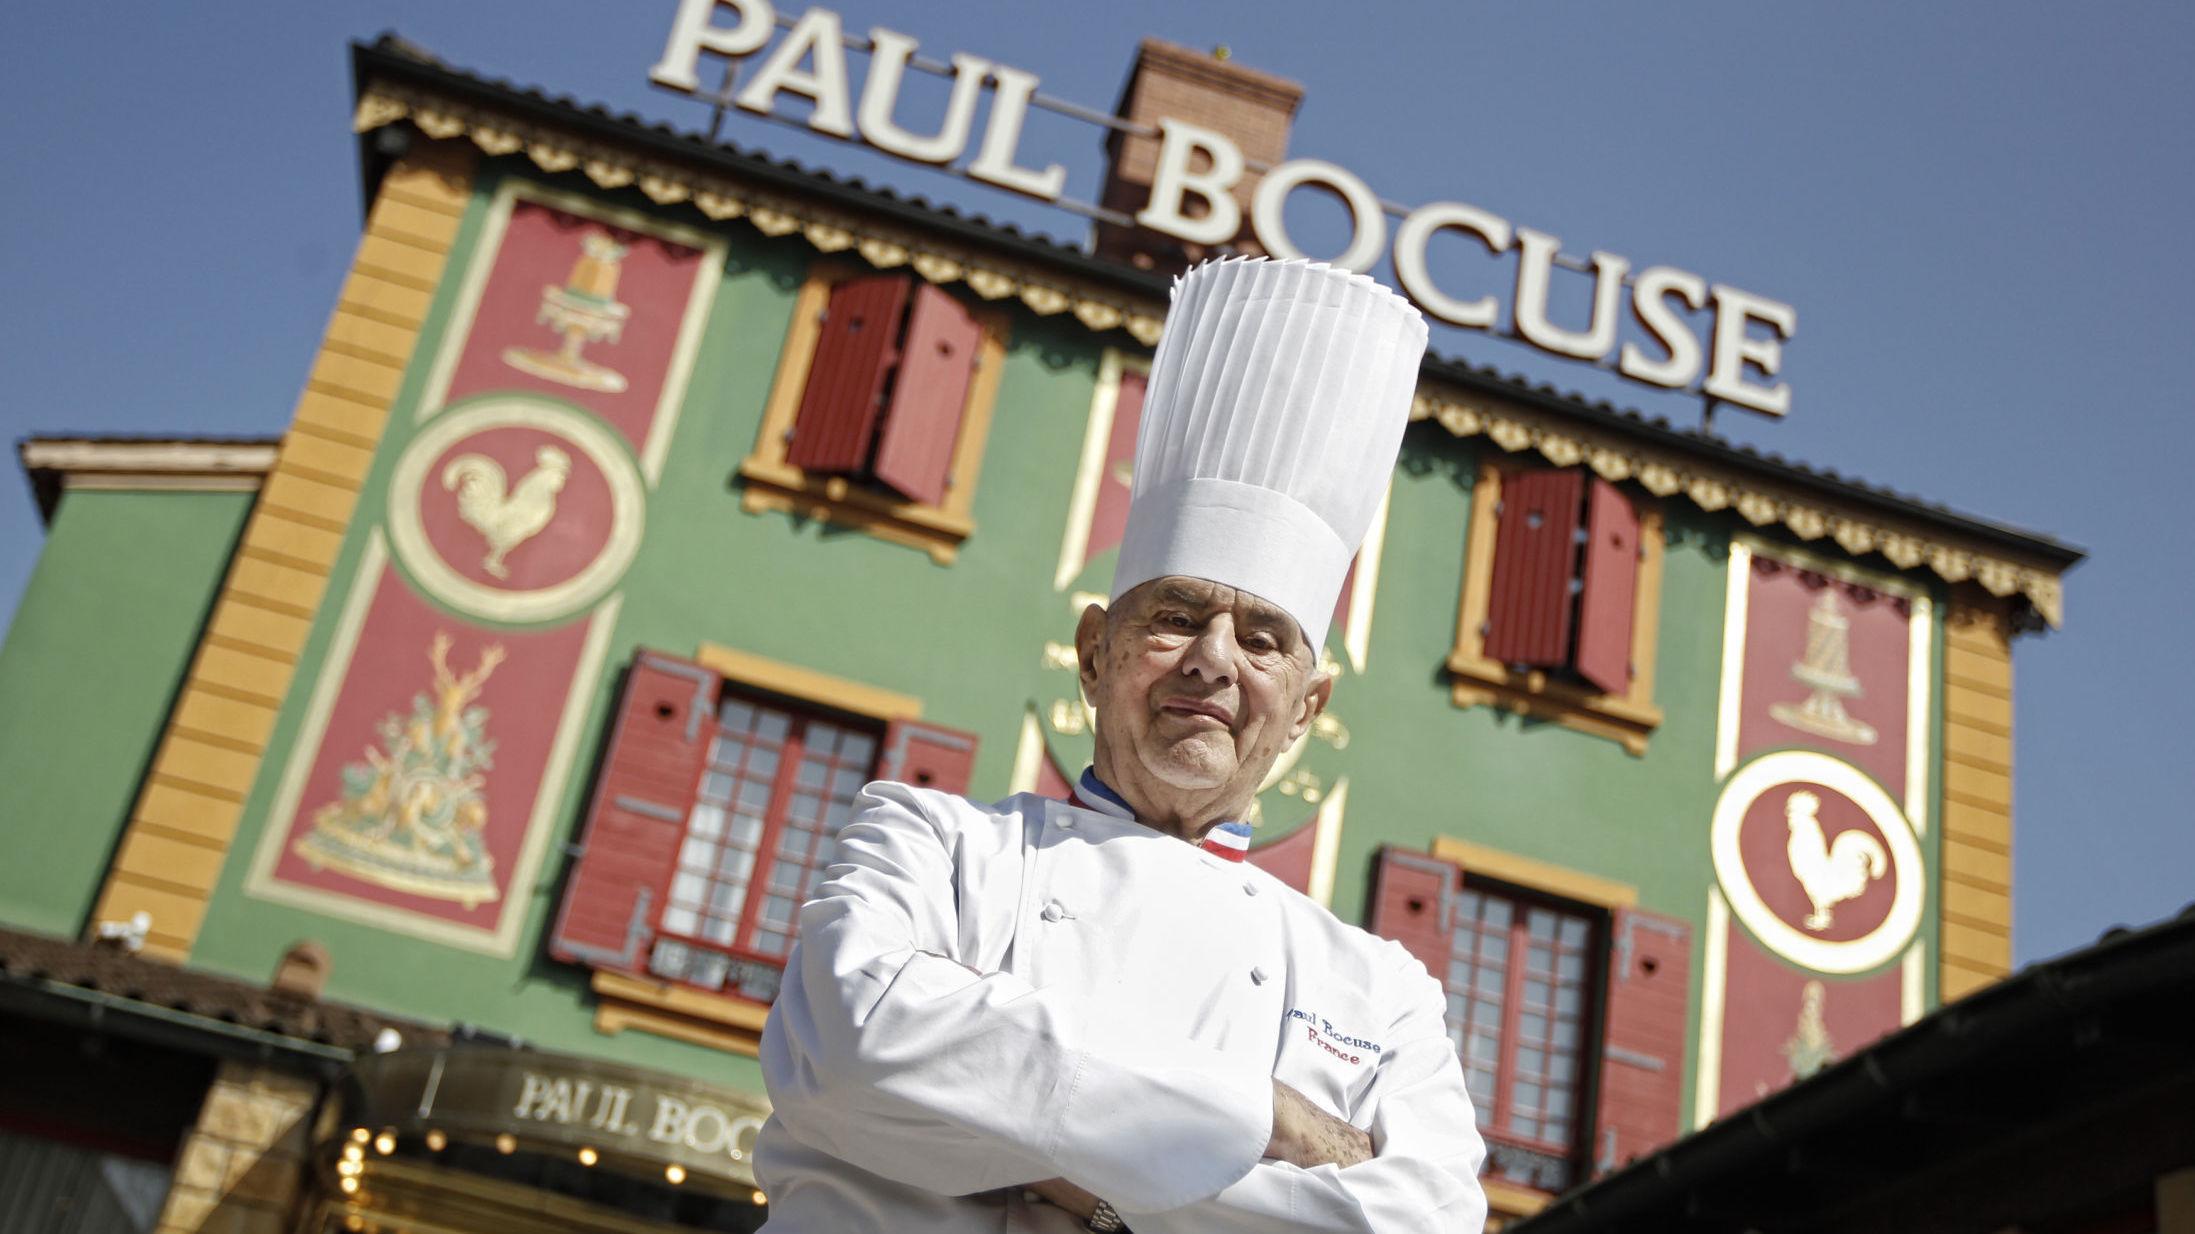 MISTET STJERNE: To år har gått siden Paul Bocuse døde. I guiden for 2020 mister restauranten, som bærer hans navn,  en av sine tre stjerner. Siden 1965 har restaurant Paul Bocuse, som ligger like utenfor Lyon, hatt tre gjeve stjerner i Michelin-guiden.